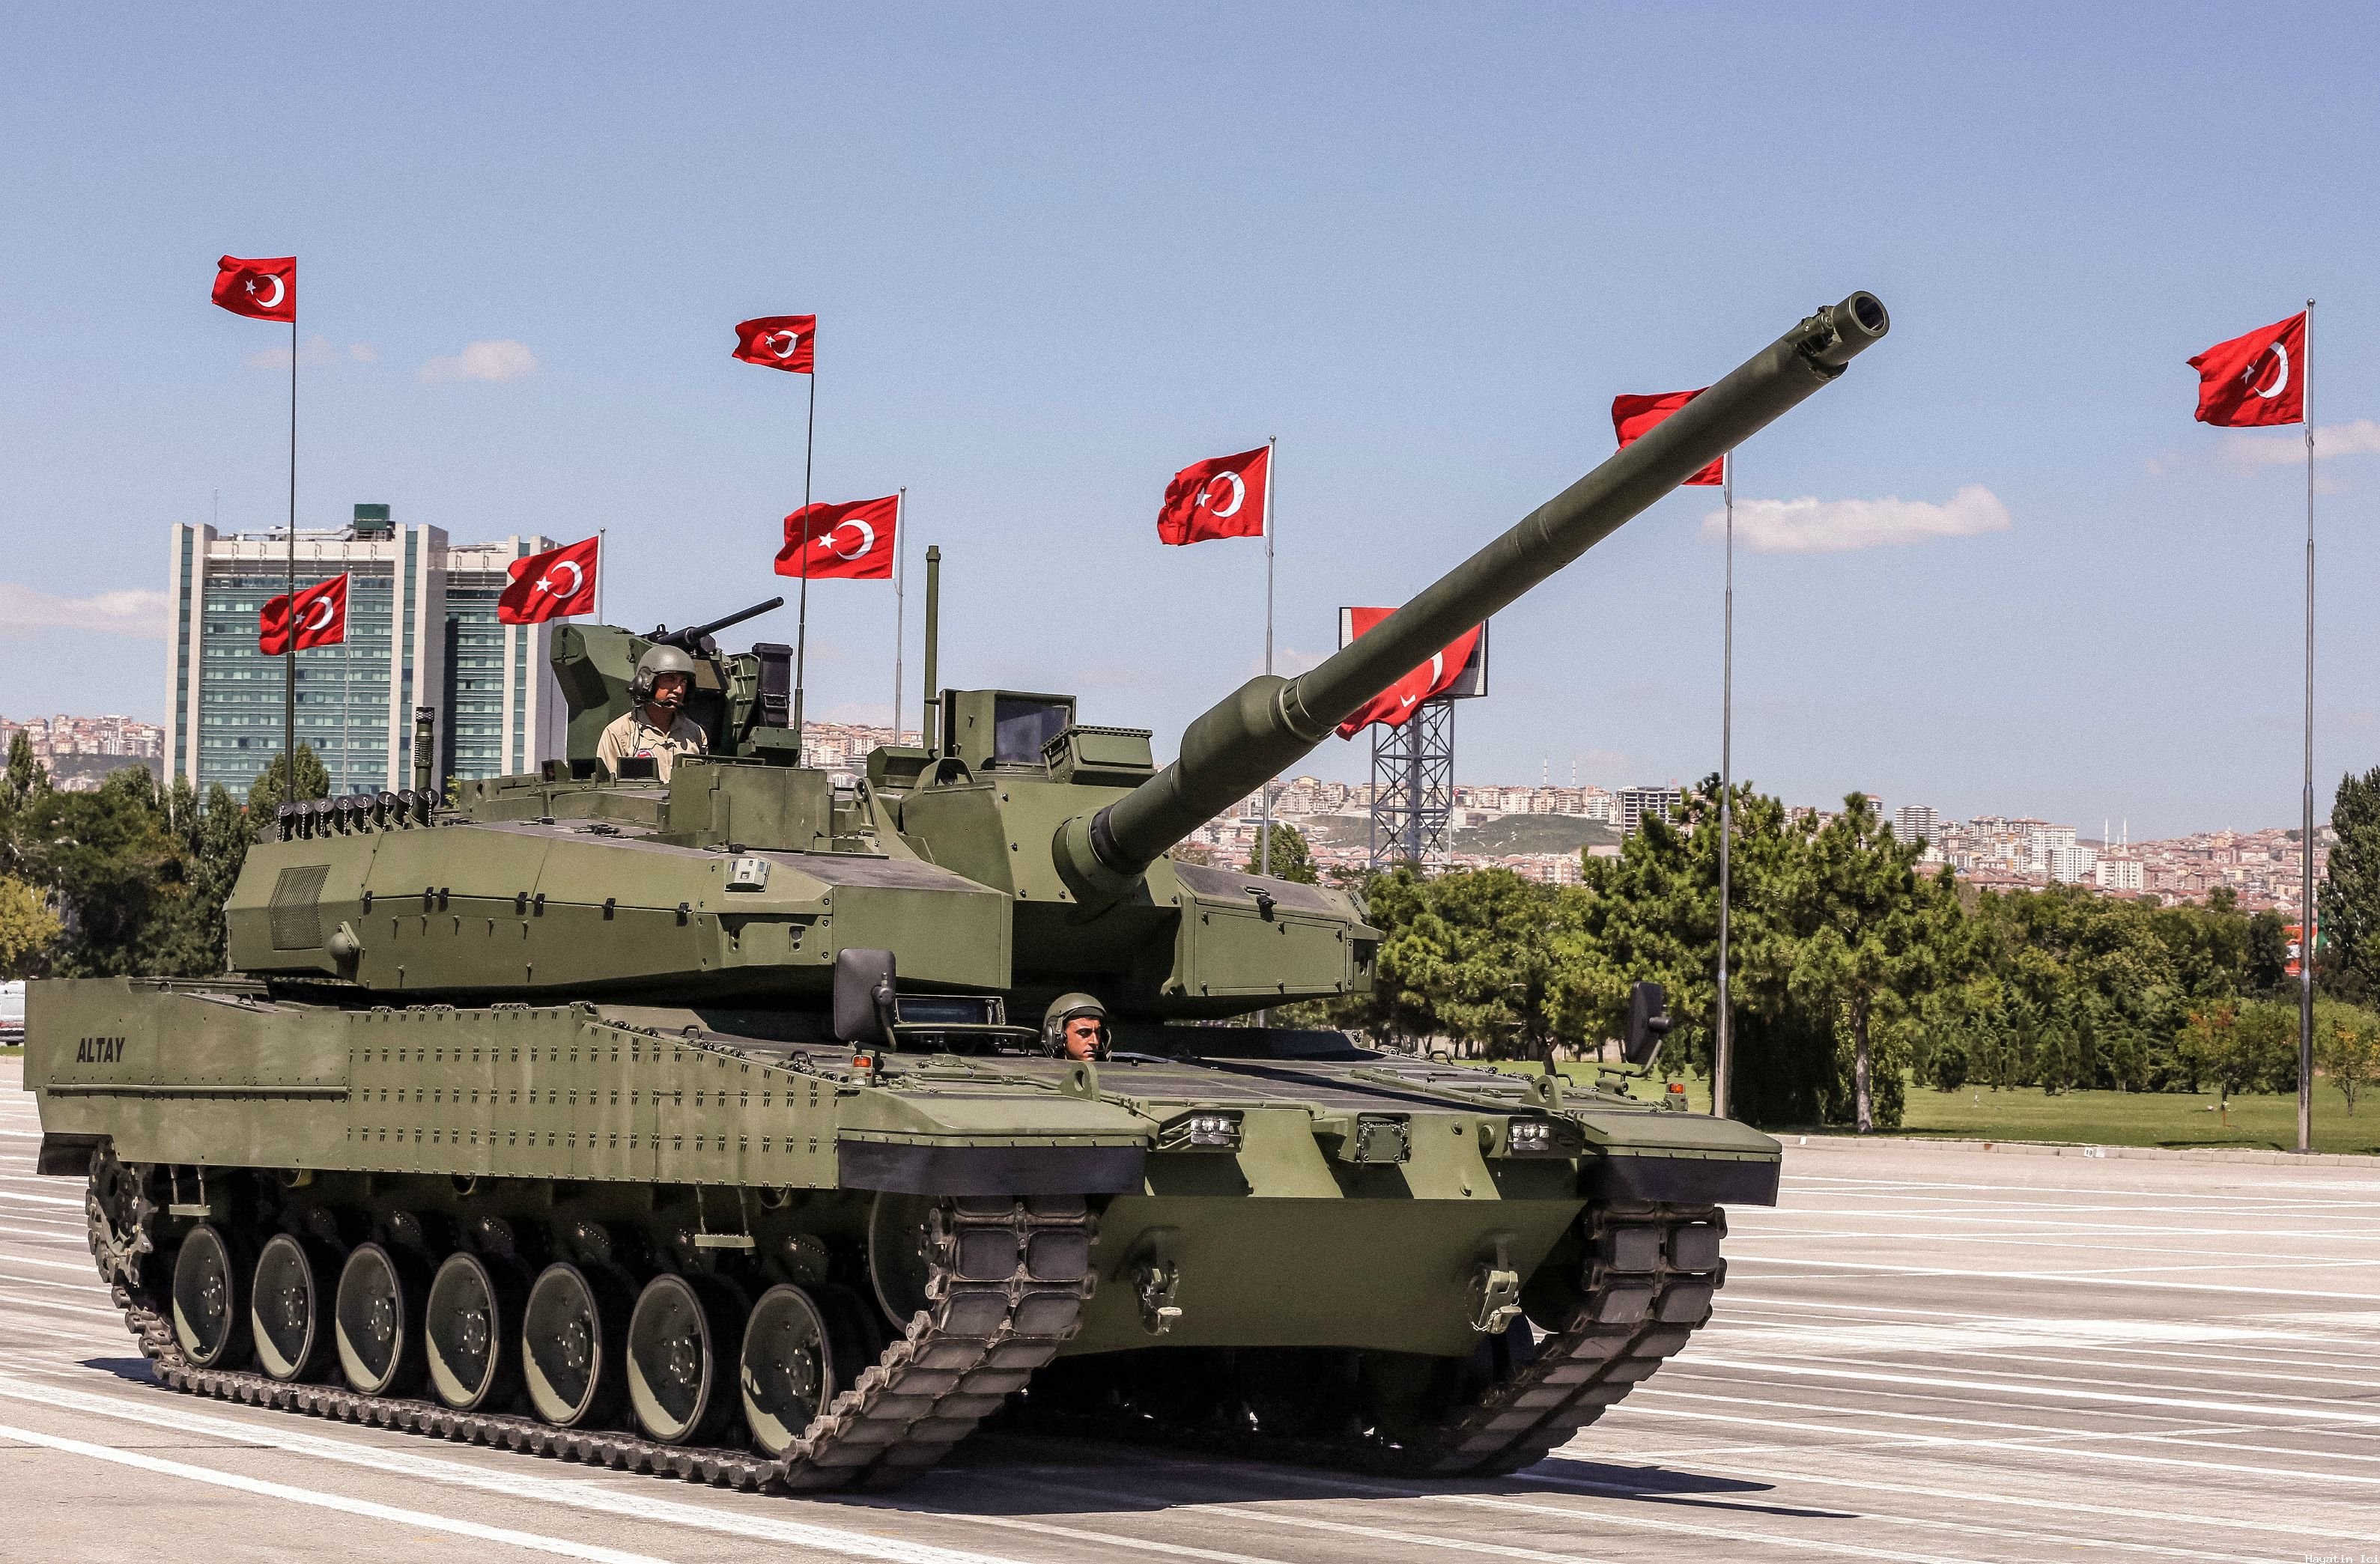 Nihayet Türkiye’nin Altay tankı Güney Kore’den bir motor buldu